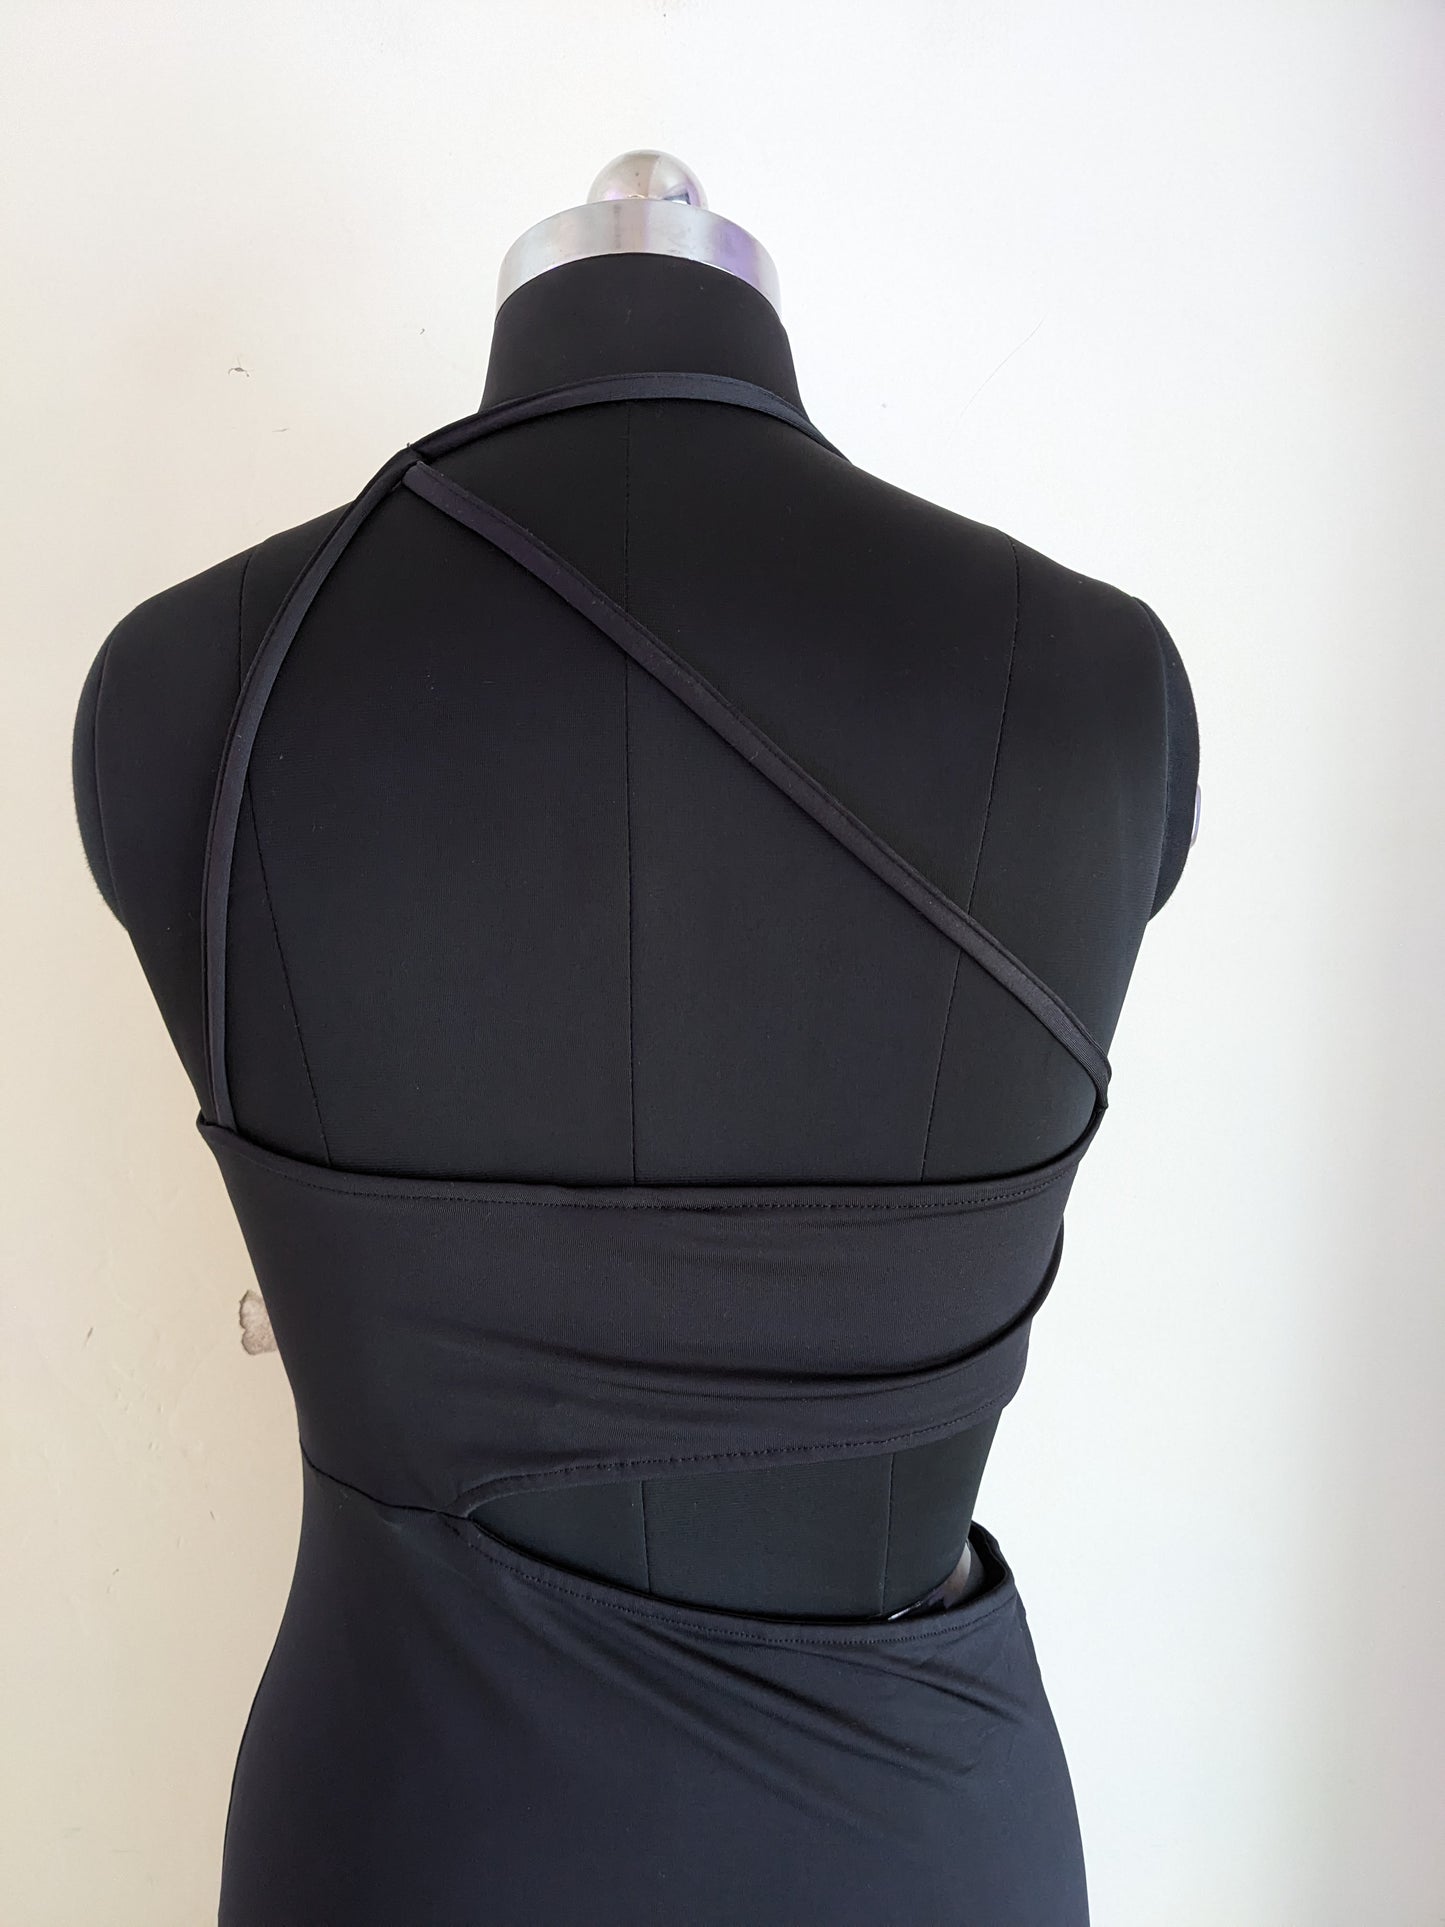 H&M One Shoulder Cut Out Black Dress